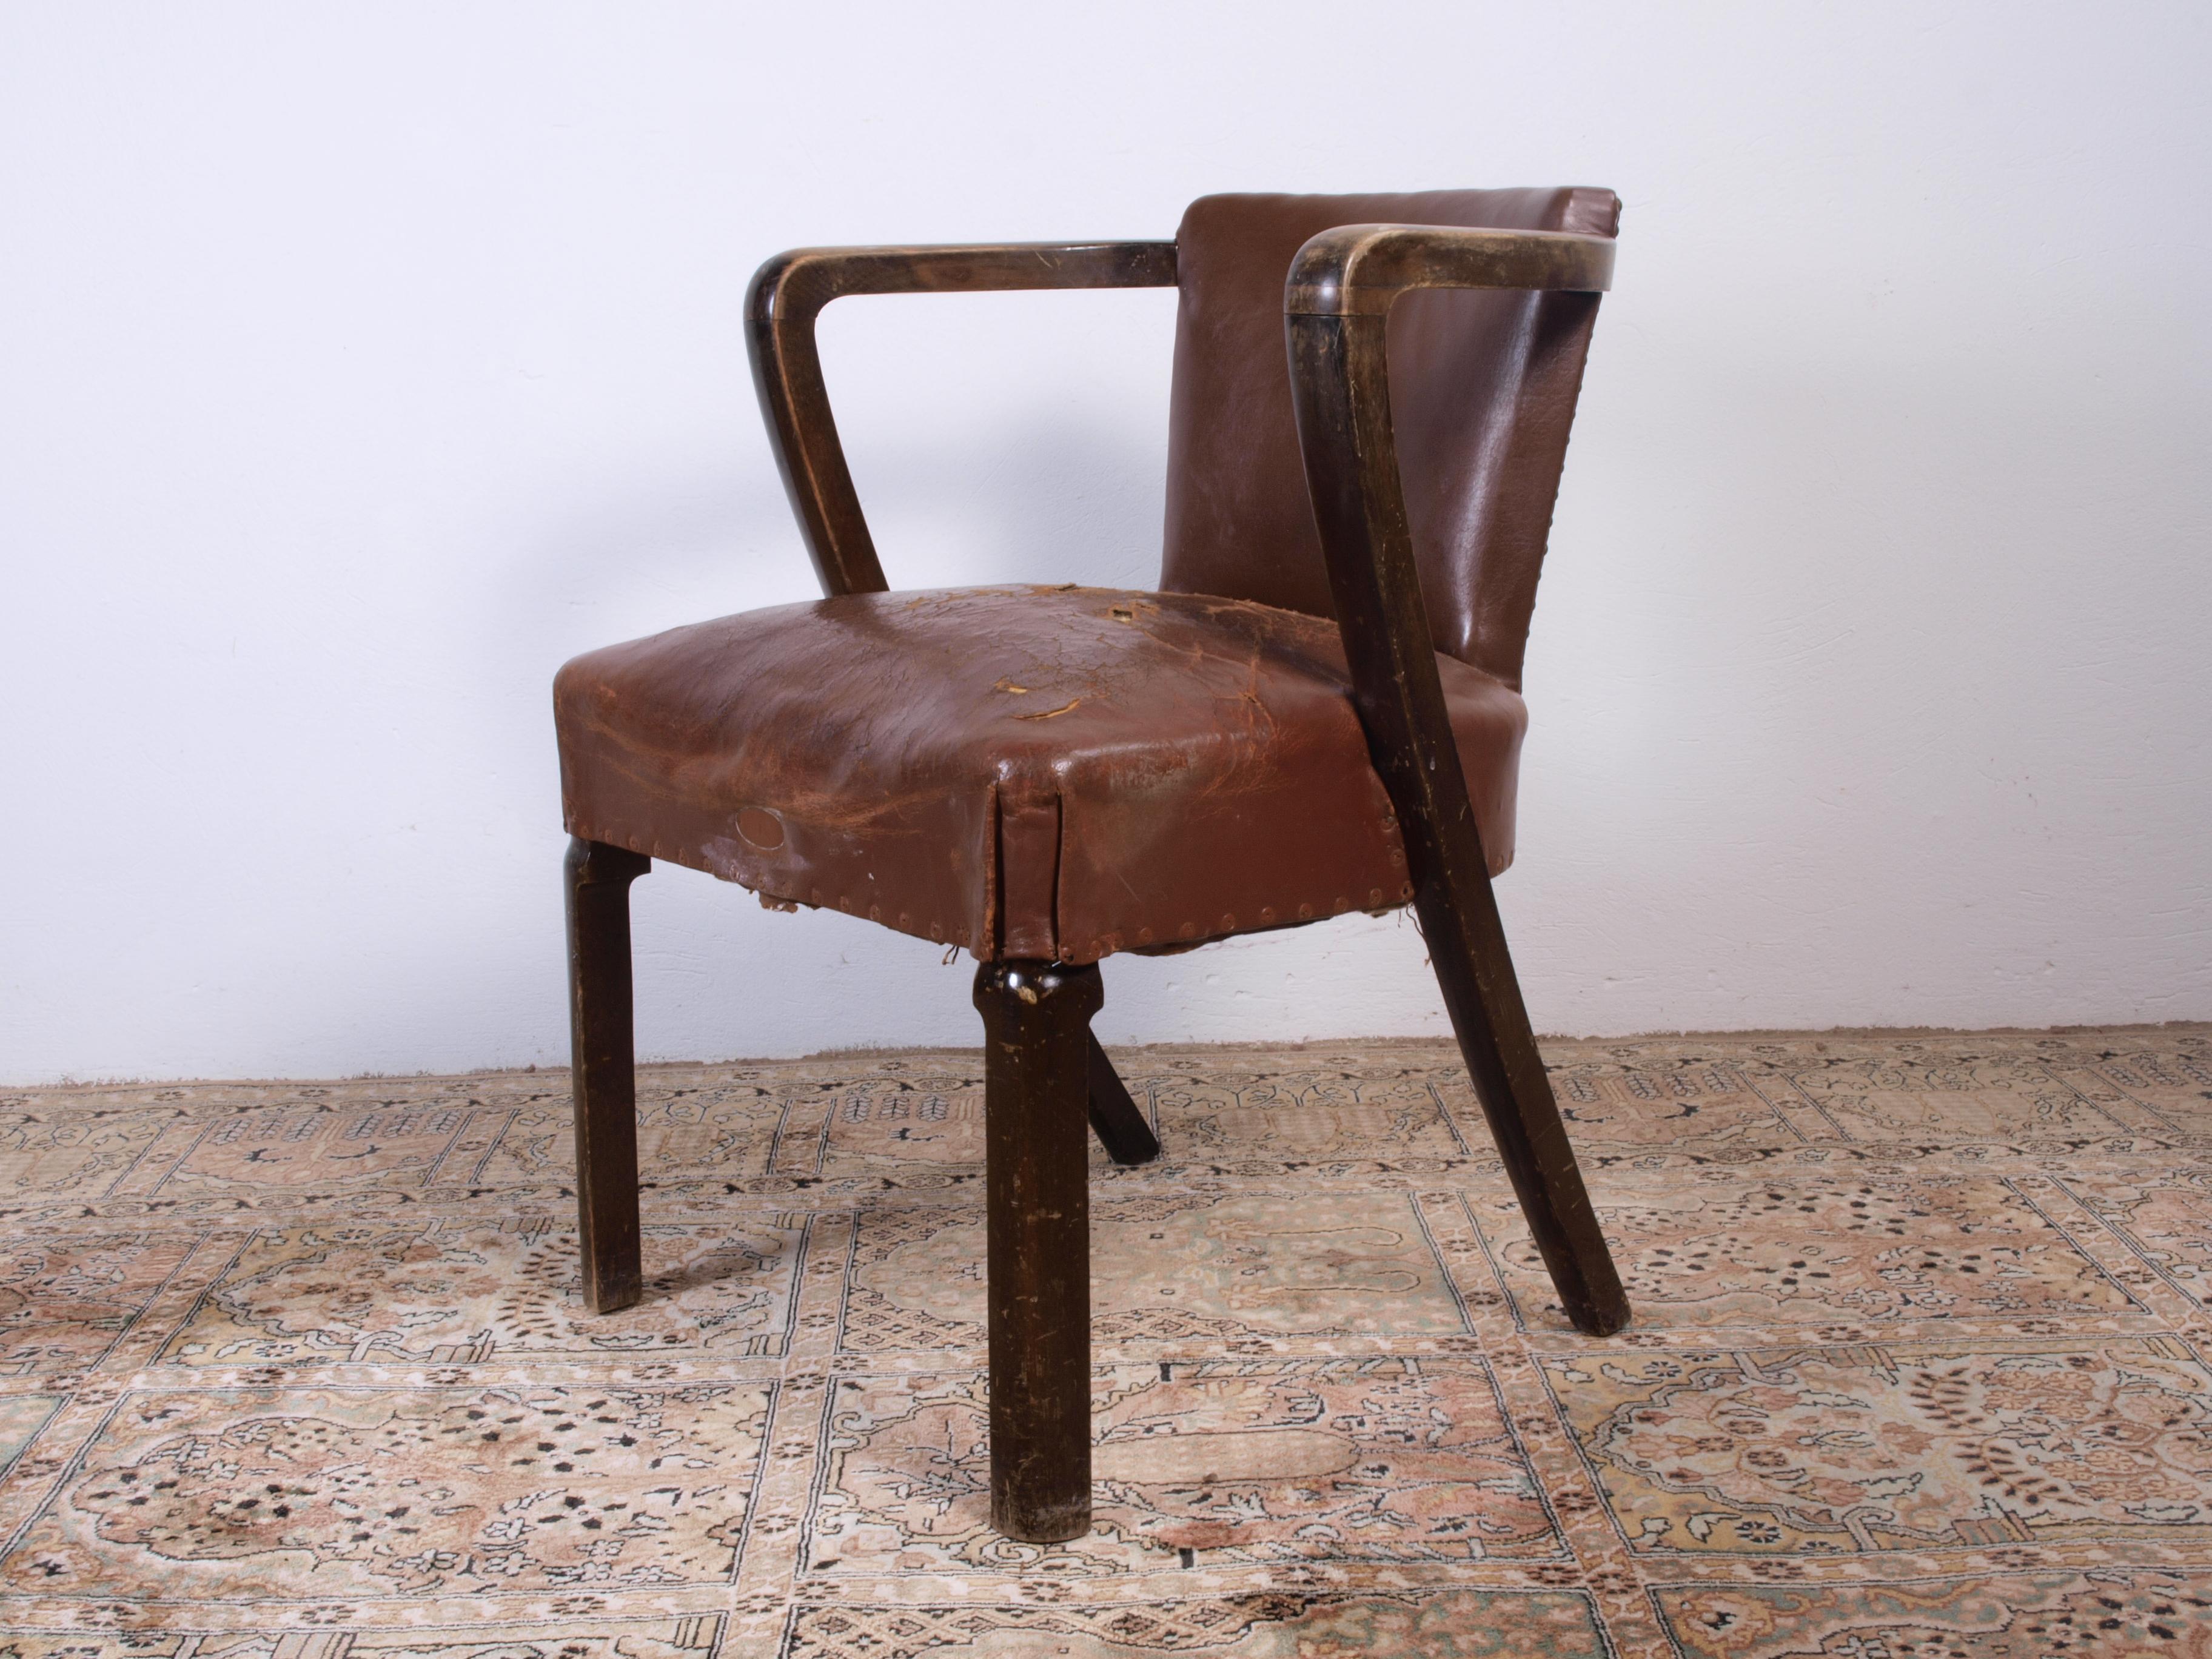 Vintage Sessel sehr schön. Muss neu gepolstert und neu beledert werden.

Das Holz ist fest und solide. Bei Fragen wenden Sie sich bitte an uns.